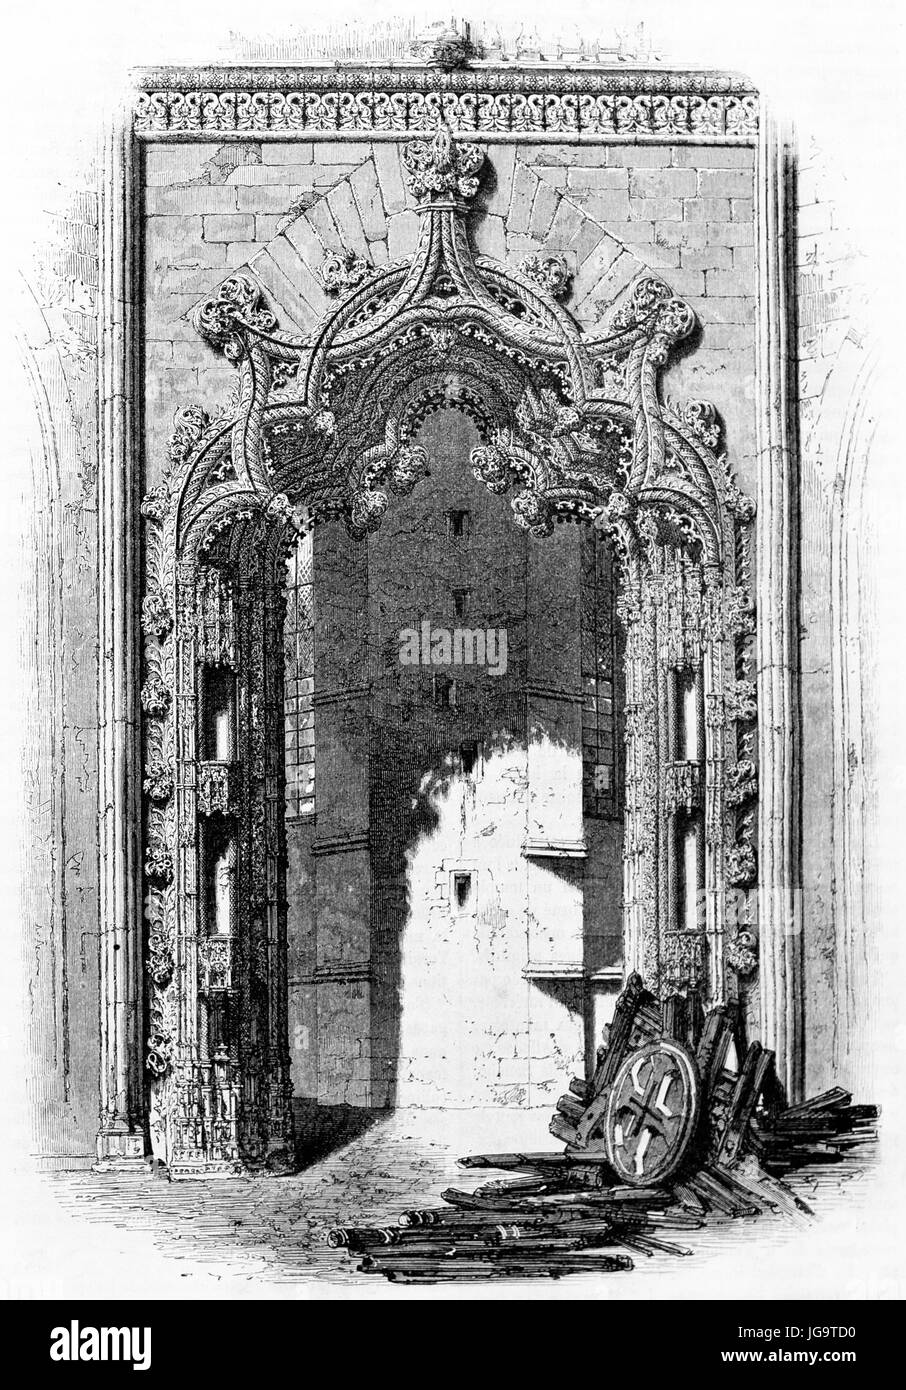 Unvollendete Kapellen Portal reich im Kloster von Batalha, Portuagal dekoriert. Alte graue Ton Radierung Stil Kunst von Therond, veröffentlicht am 1861 Stockfoto